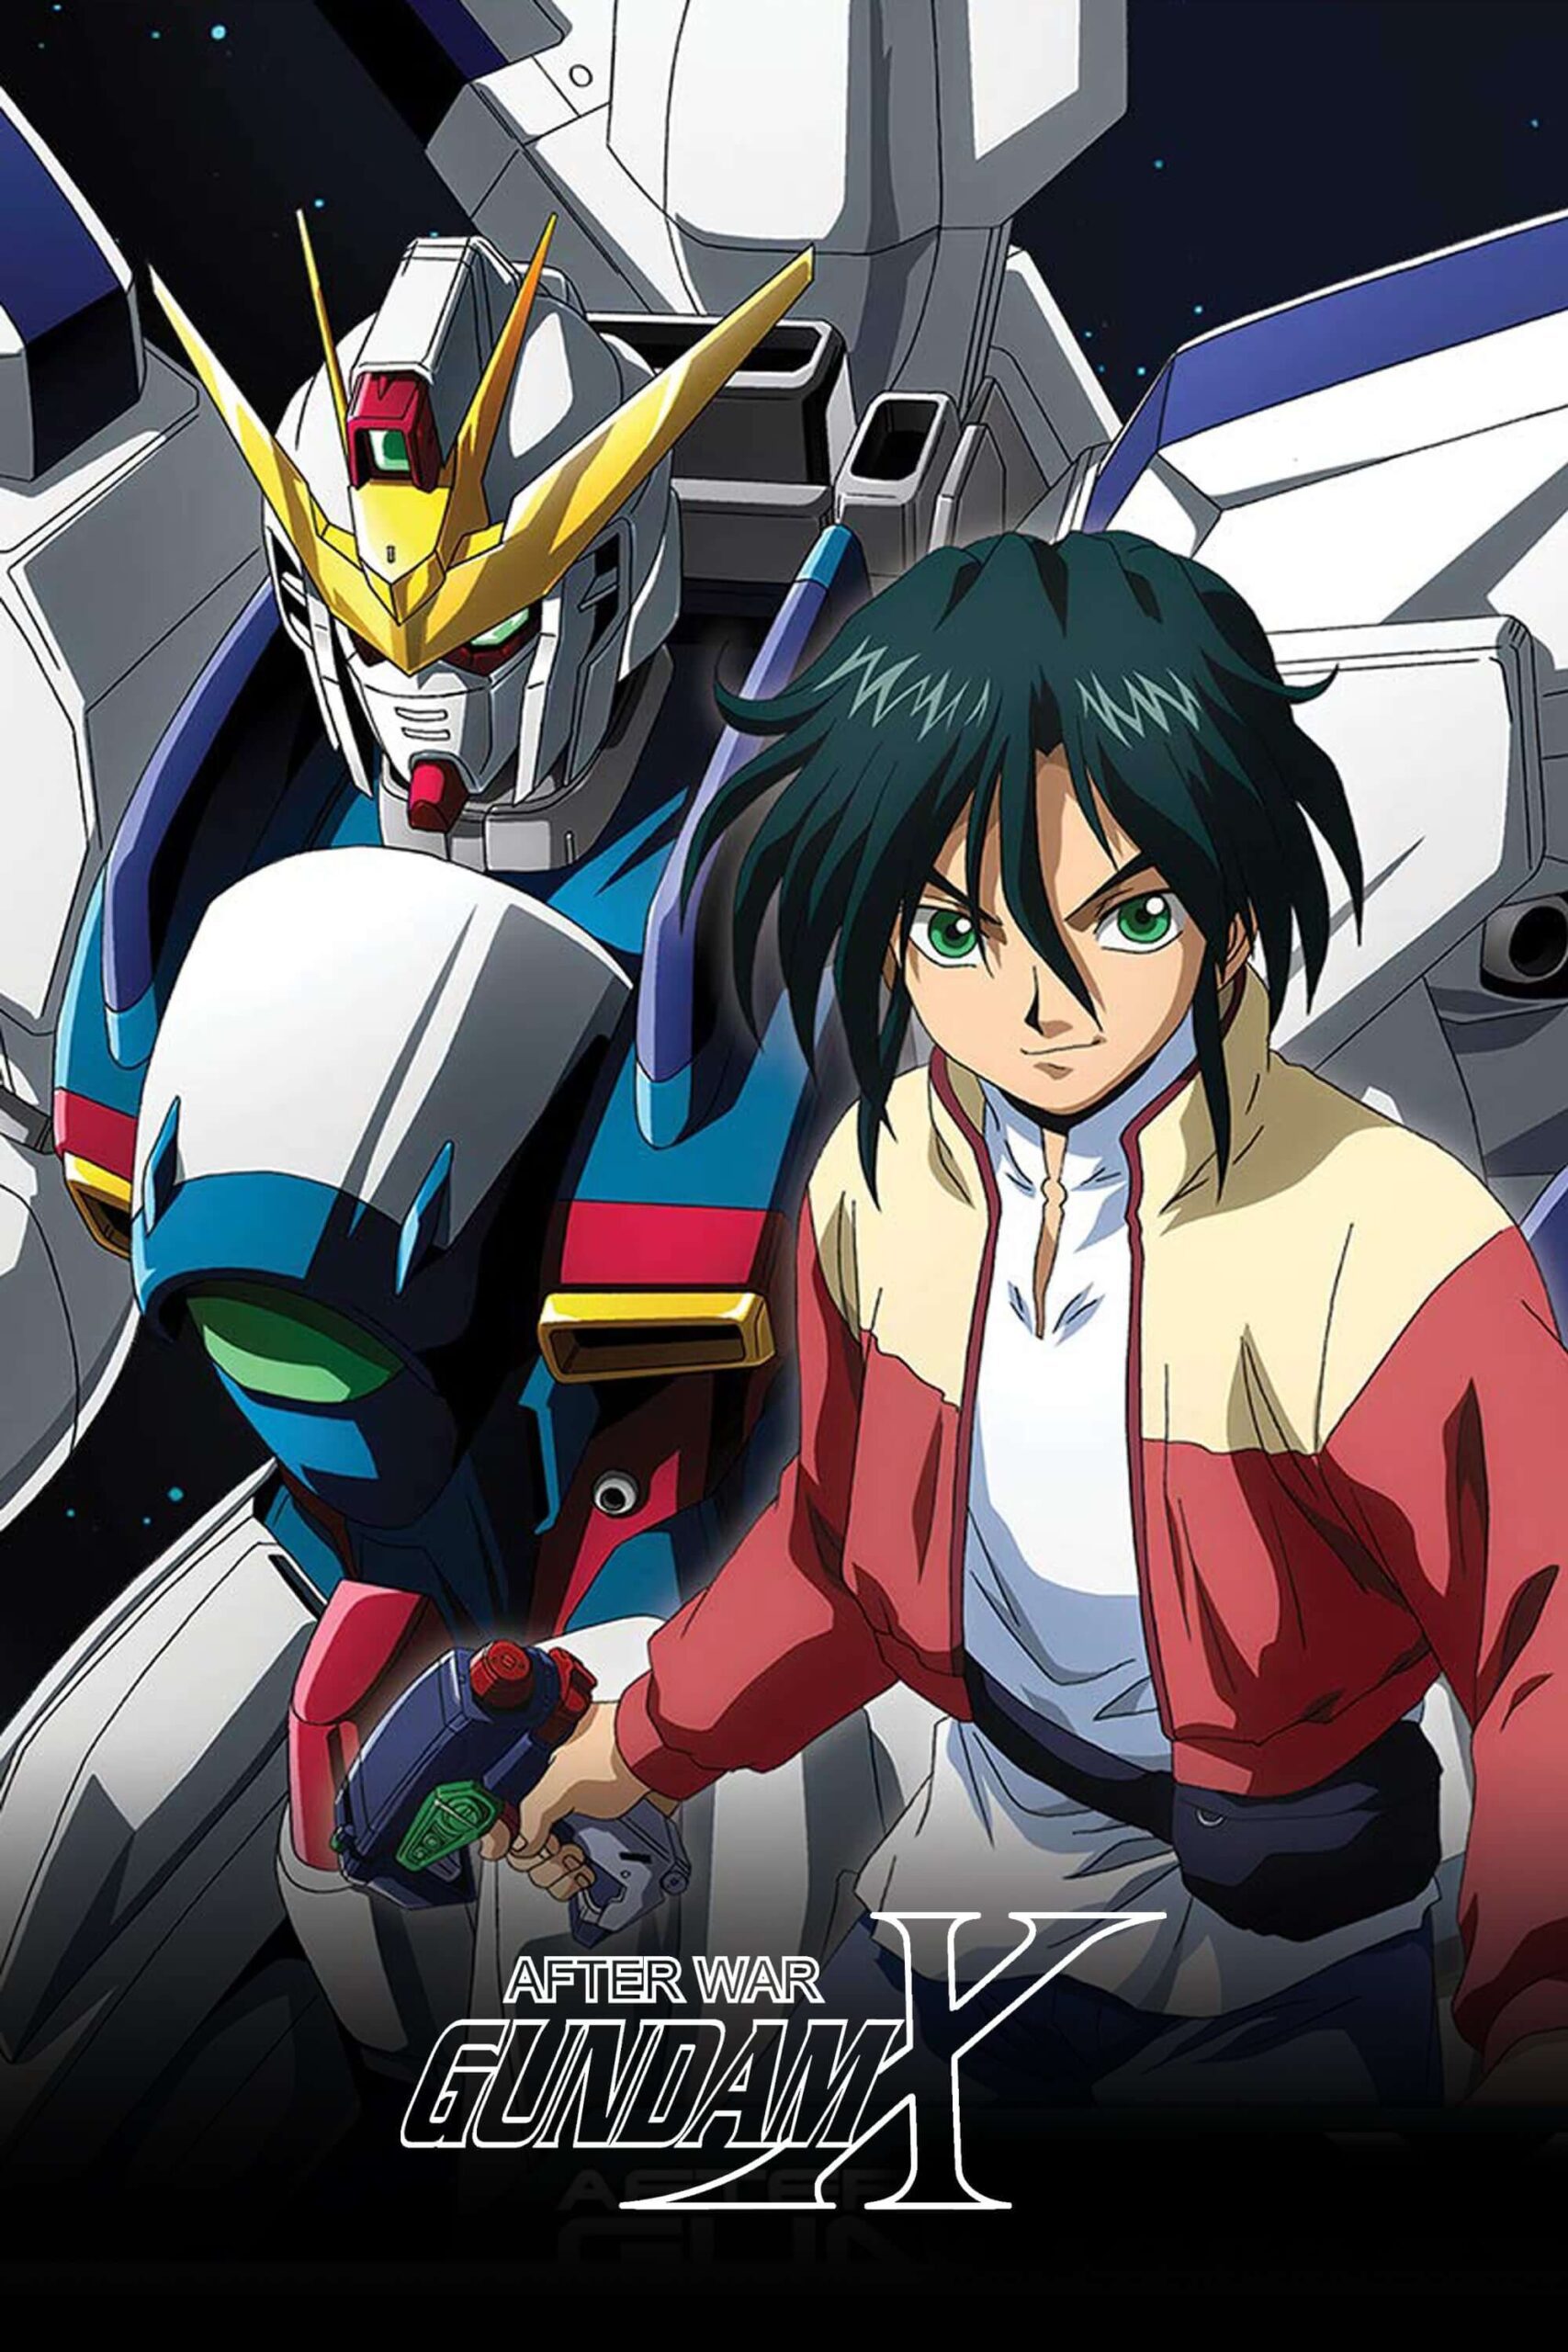 بعد از جنگ گاندام ایکس (After War Gundam X)